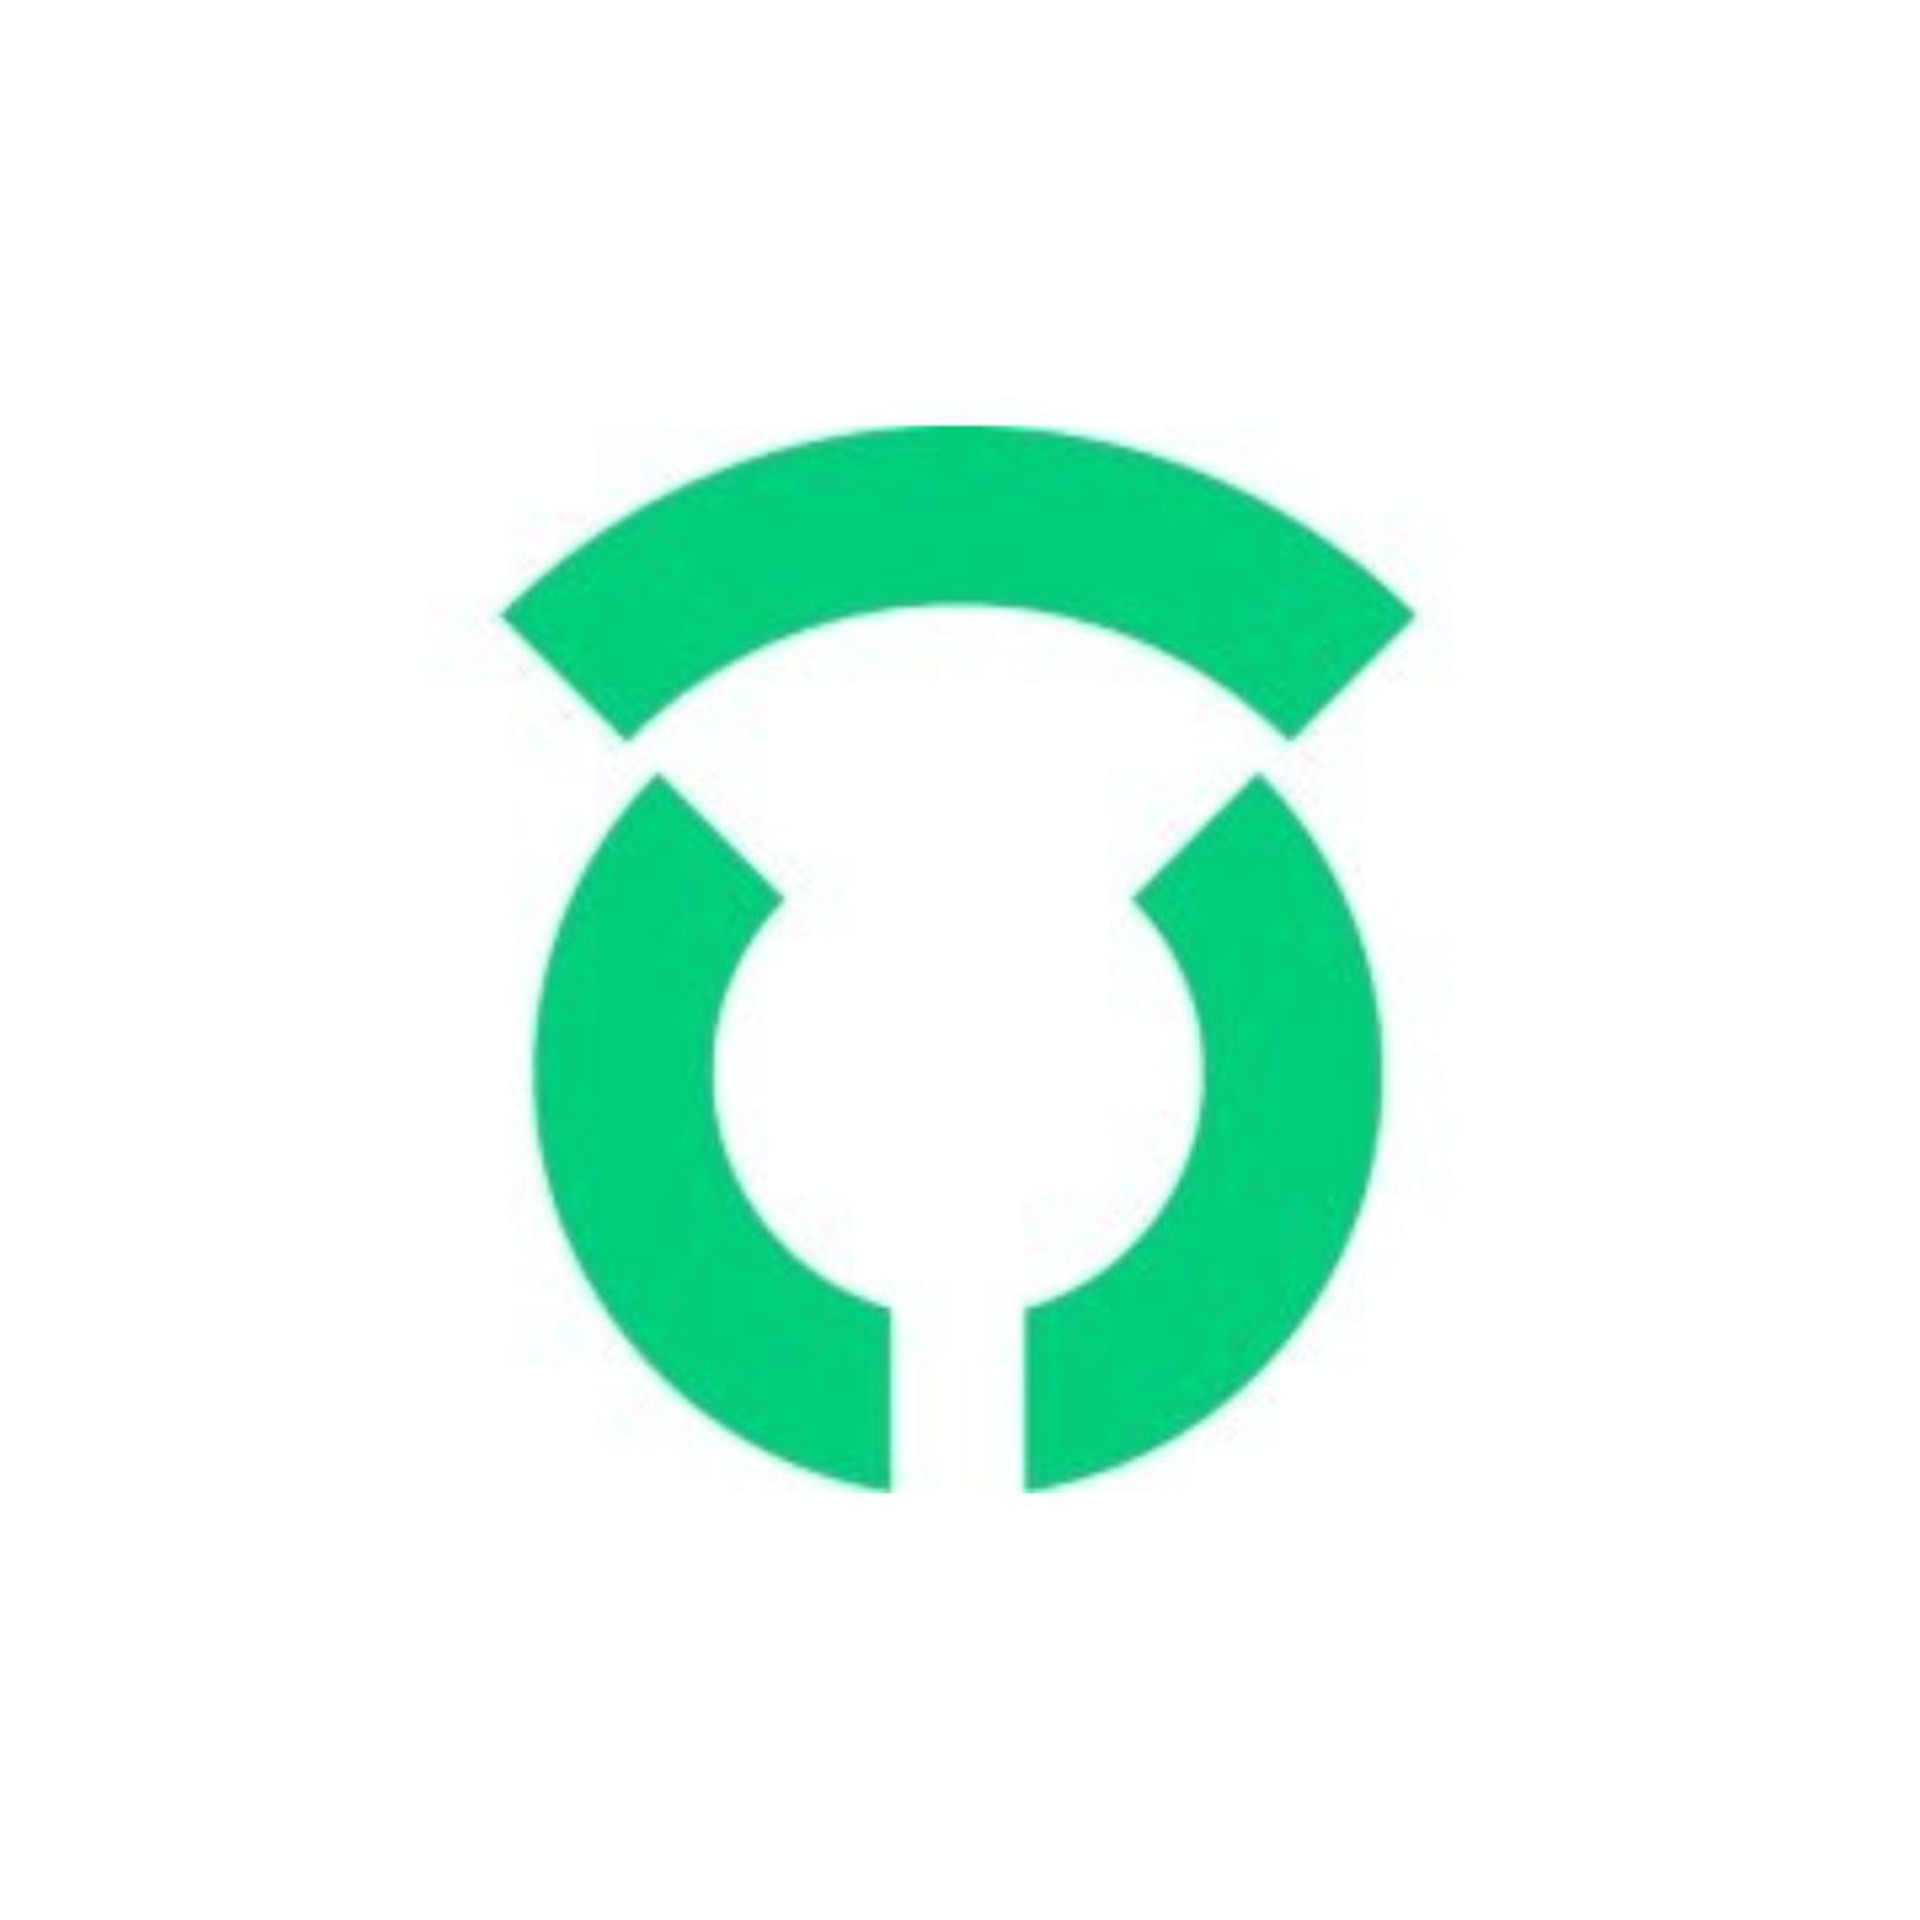 Background image - Data Thistle Logo